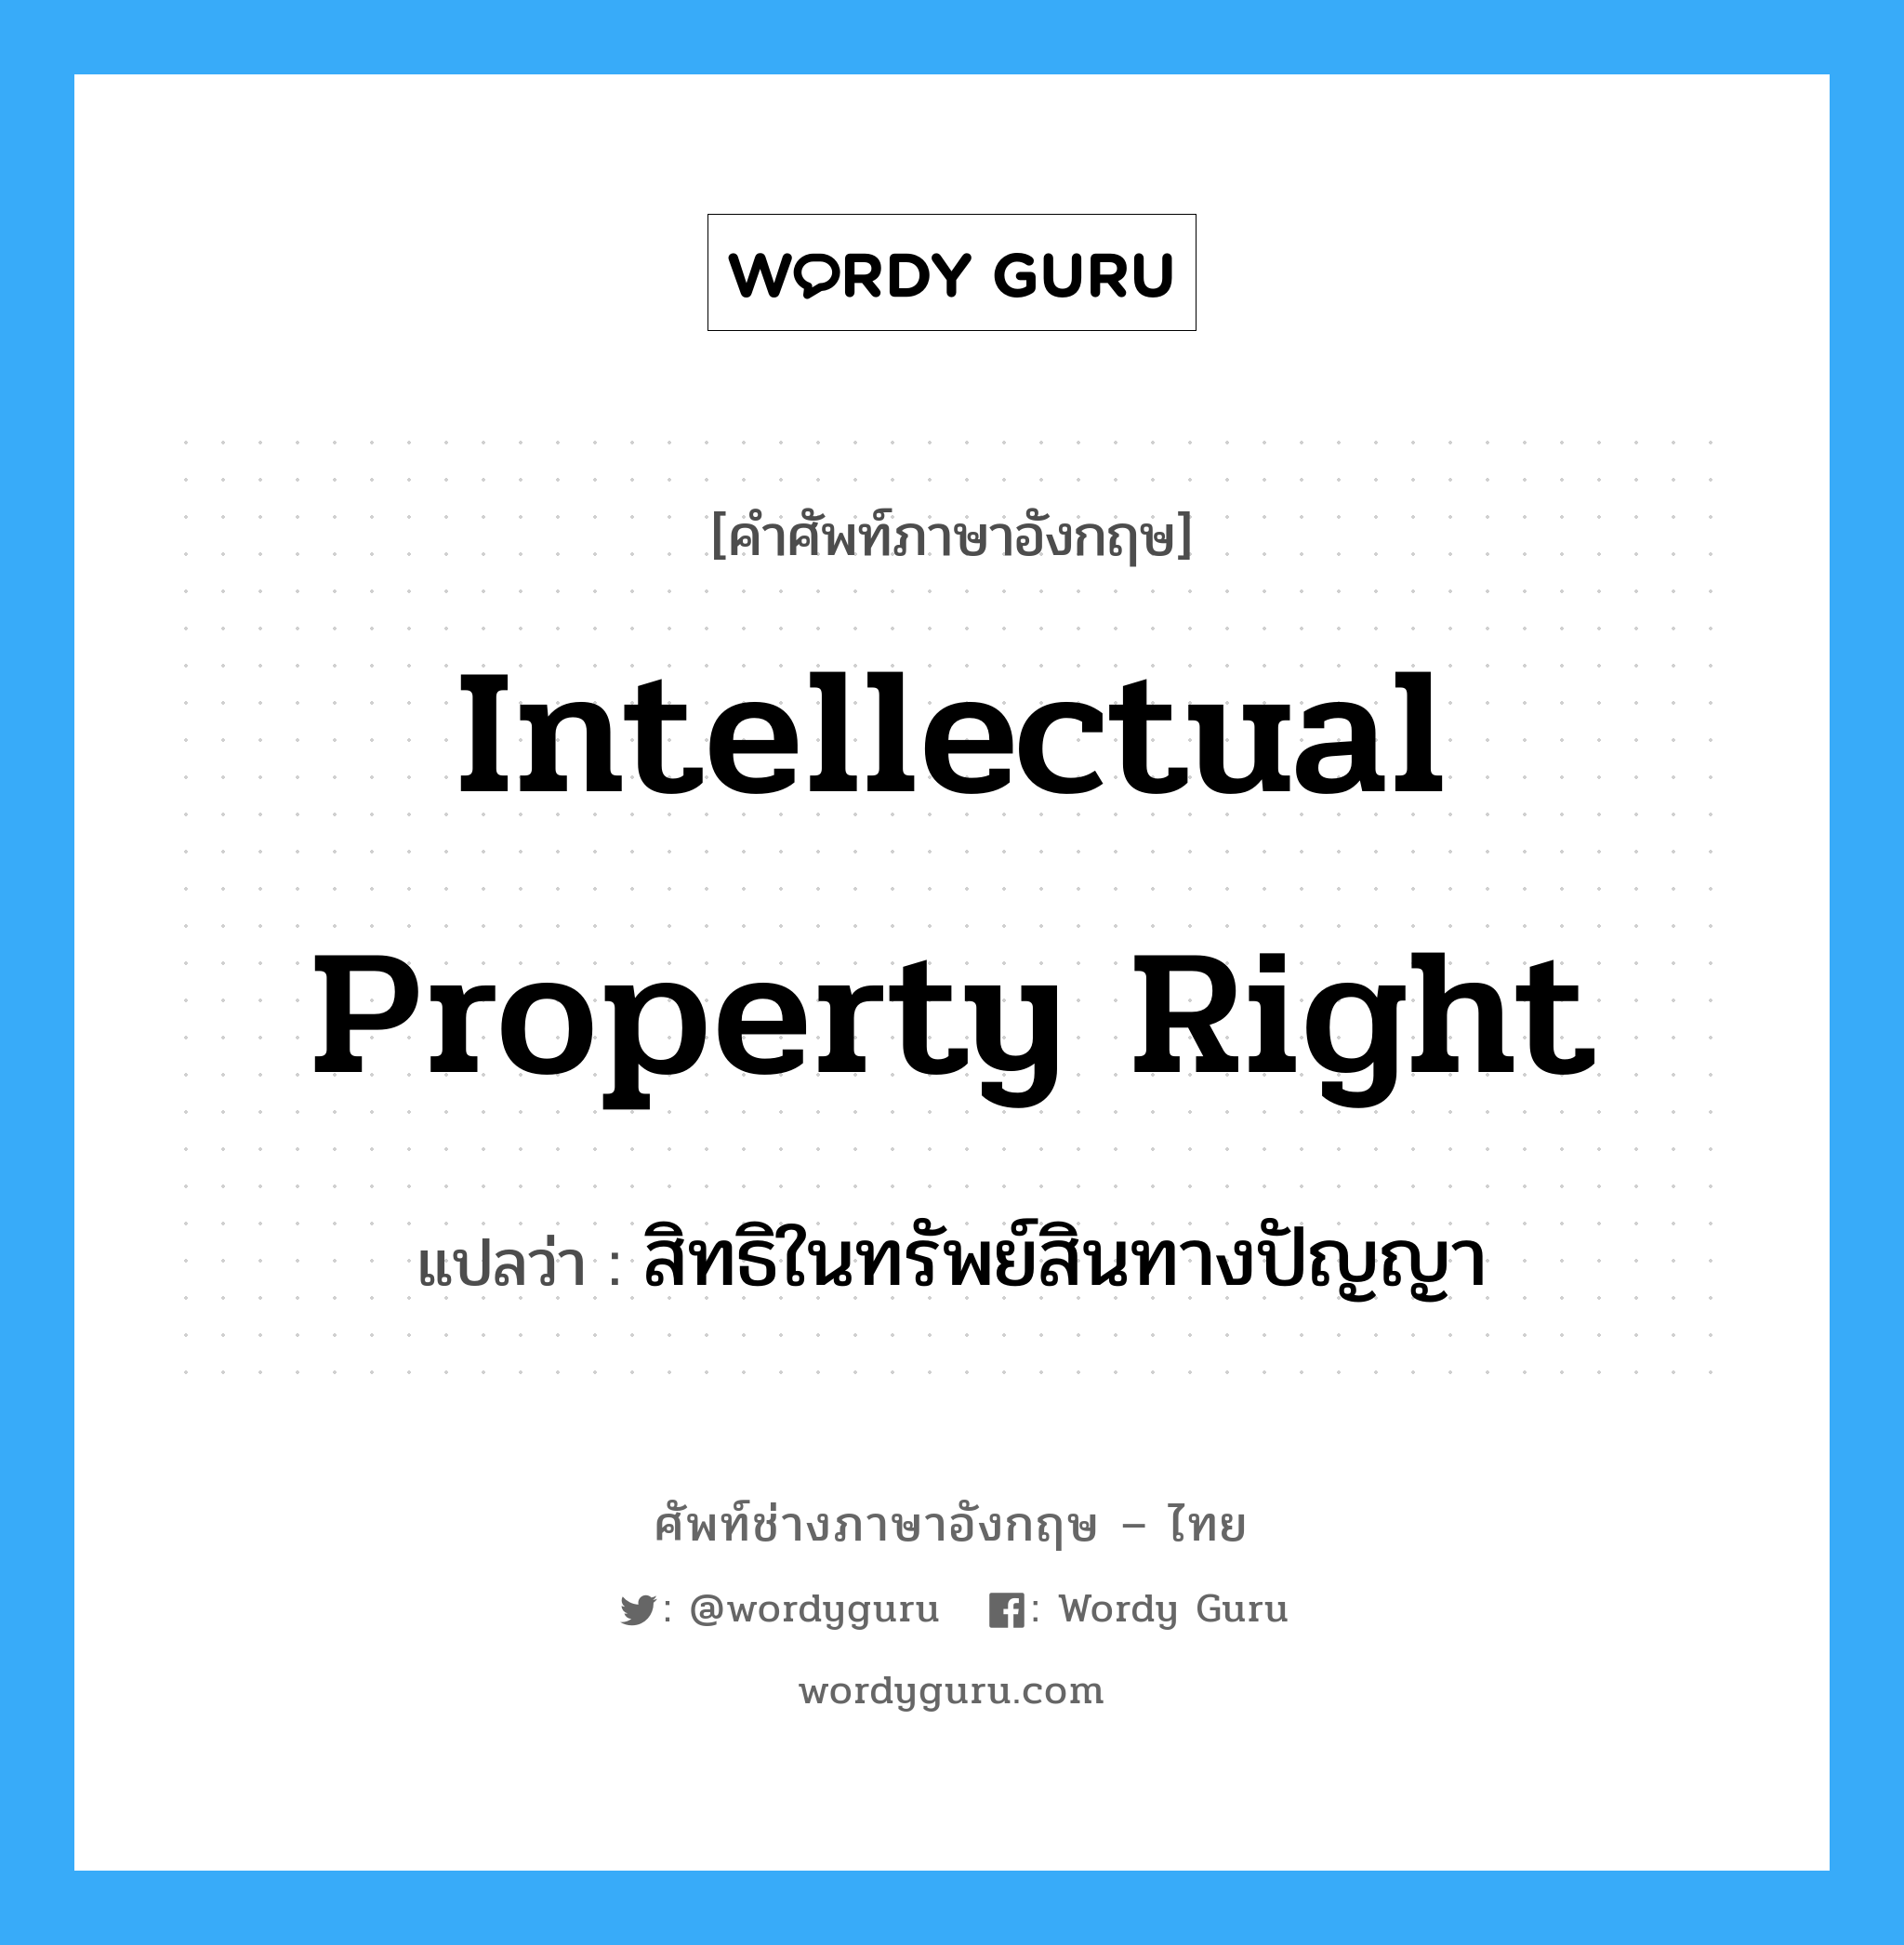 สิทธิในทรัพย์สินทางปัญญา ภาษาอังกฤษ?, คำศัพท์ช่างภาษาอังกฤษ - ไทย สิทธิในทรัพย์สินทางปัญญา คำศัพท์ภาษาอังกฤษ สิทธิในทรัพย์สินทางปัญญา แปลว่า Intellectual Property Right